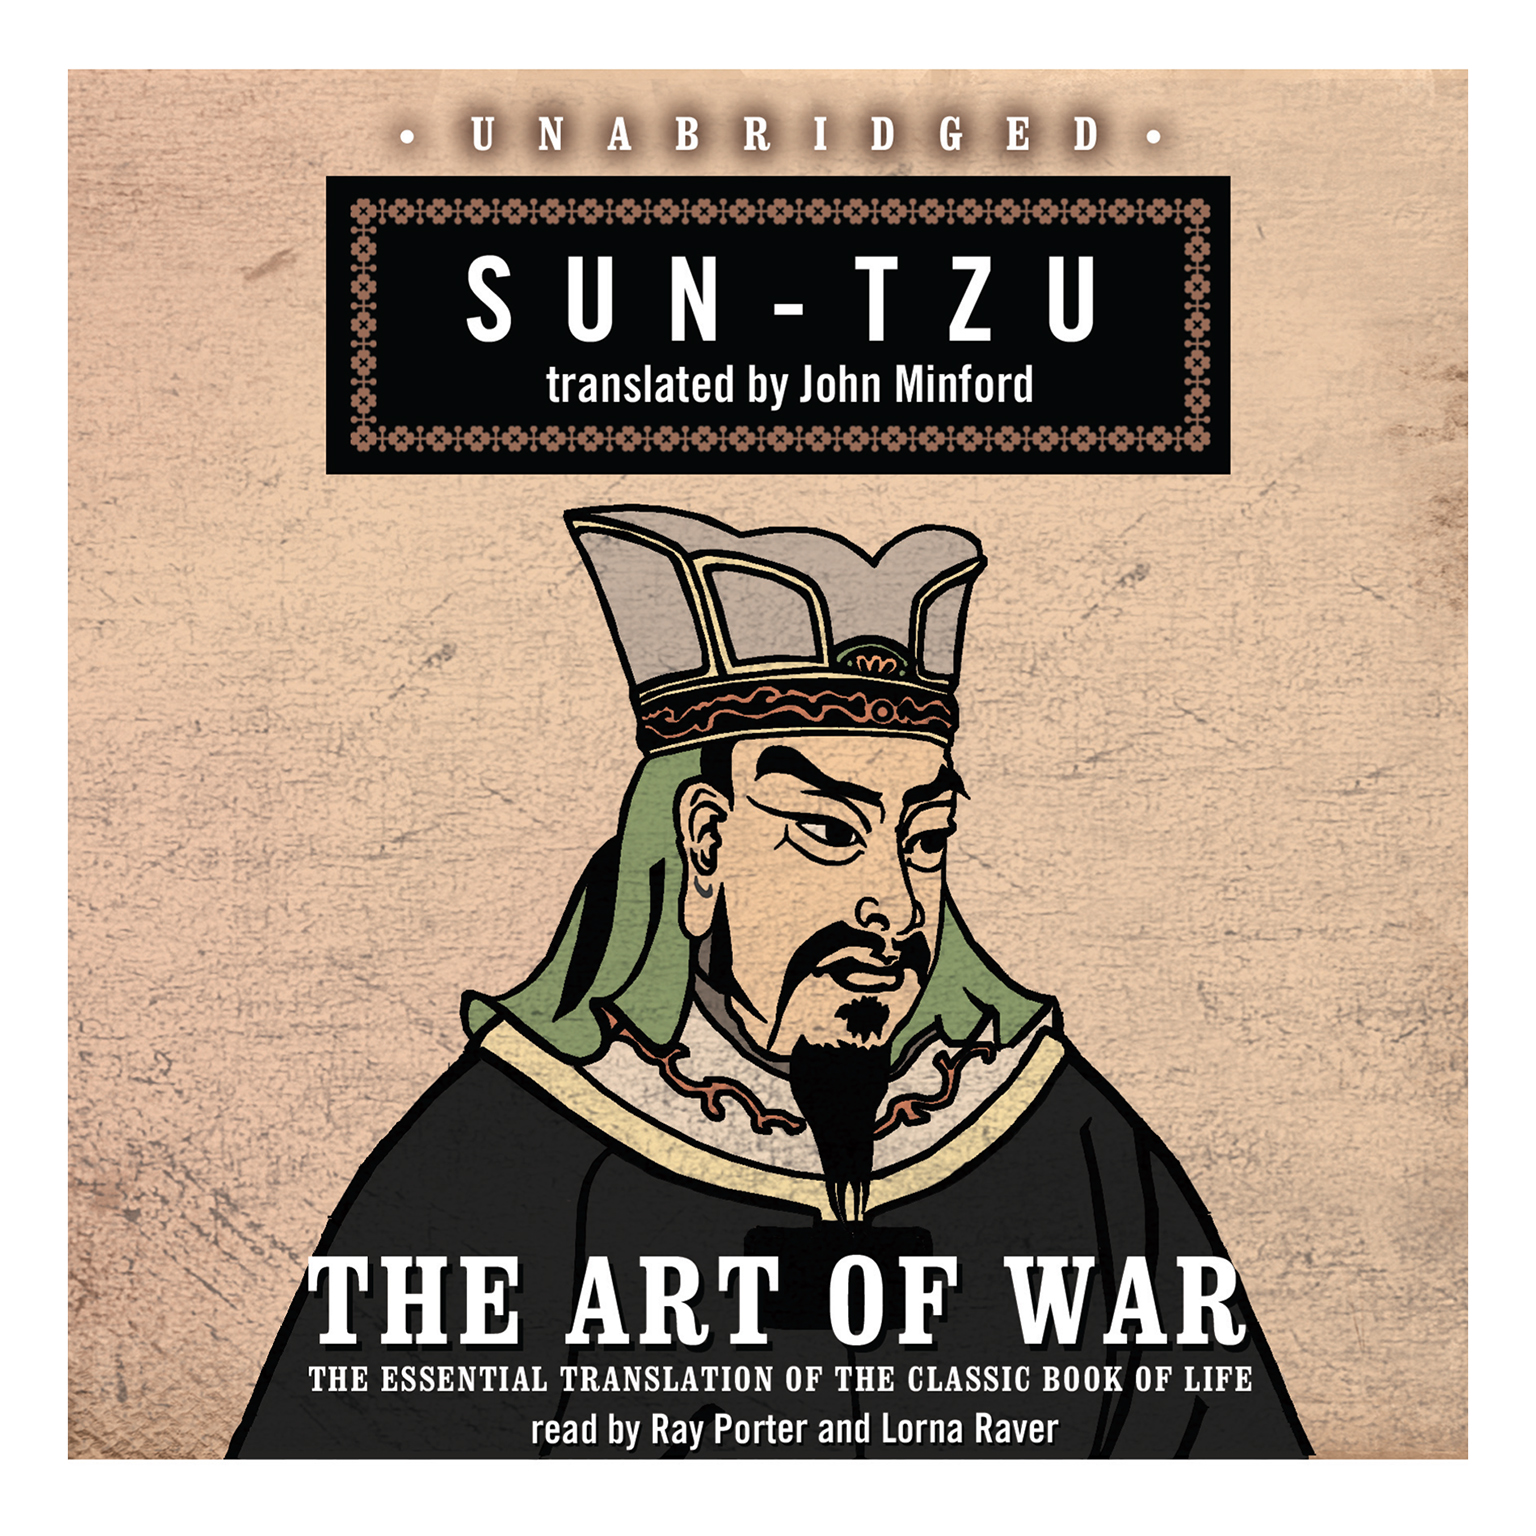 The Art of War by Sun Tzu by Sun Tzu